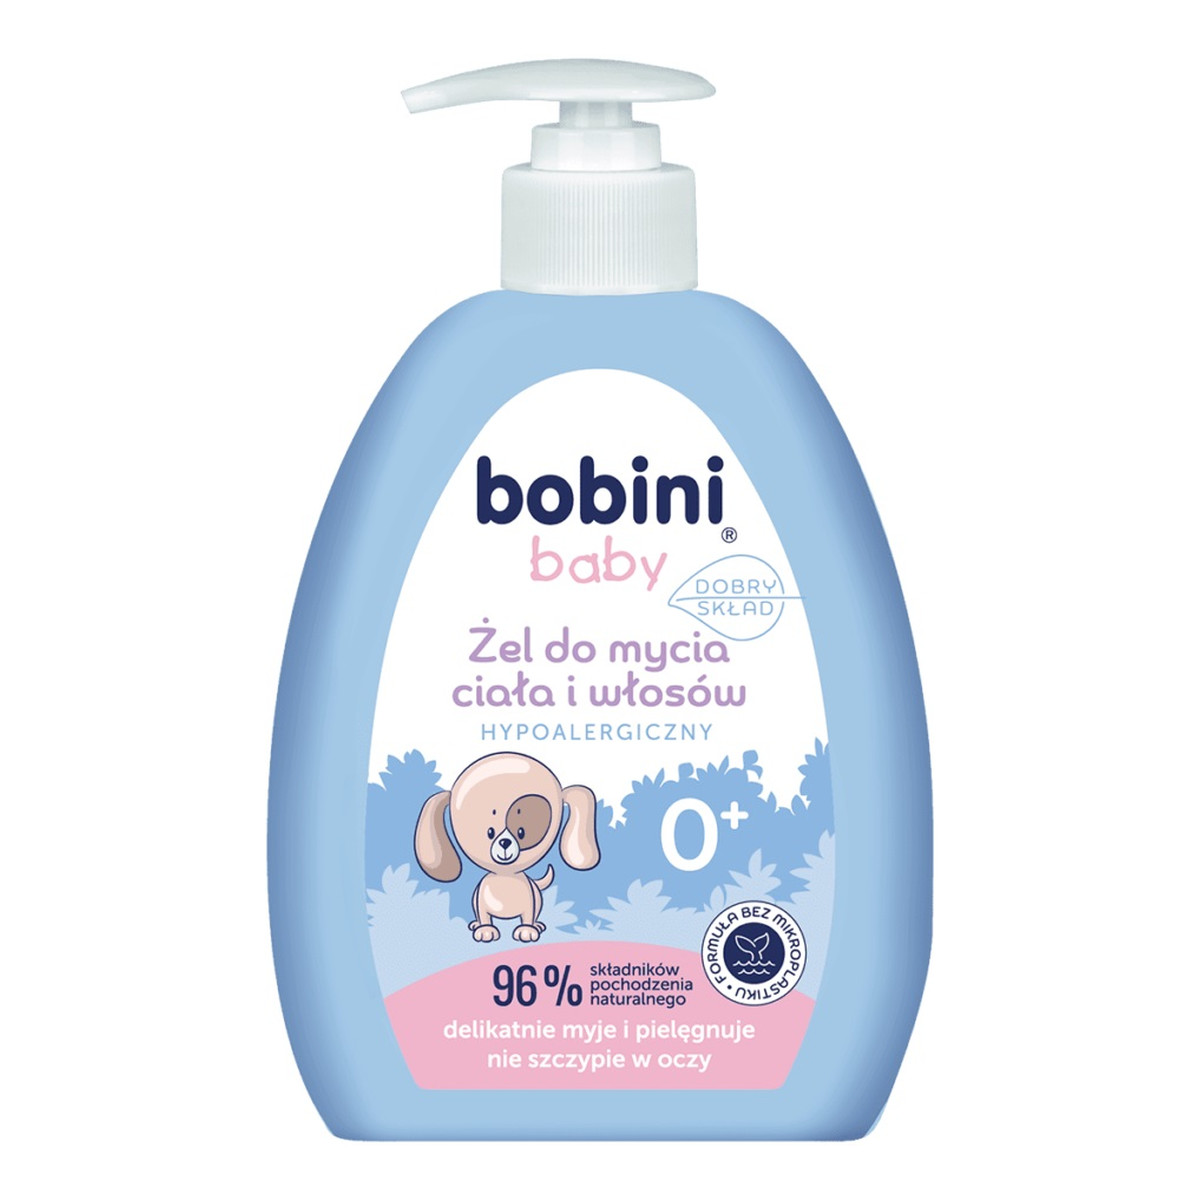 Bobini Baby Żel do mycia ciała i włosów hypoalergiczny 300ml